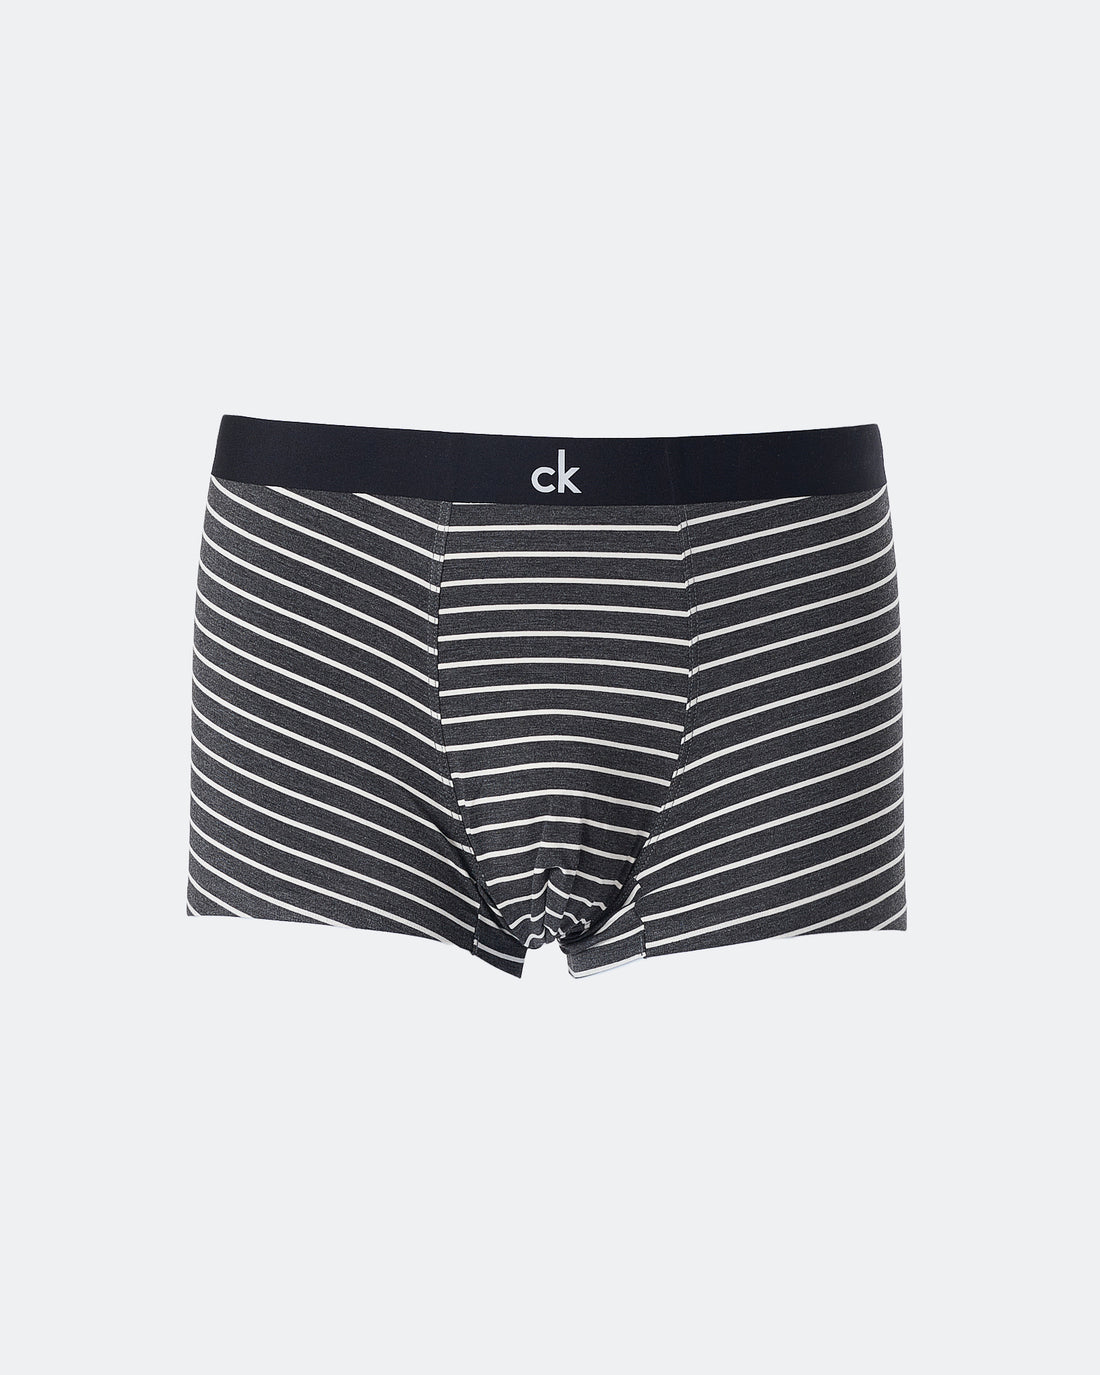 CK Striped Men Black Underwear 6.90